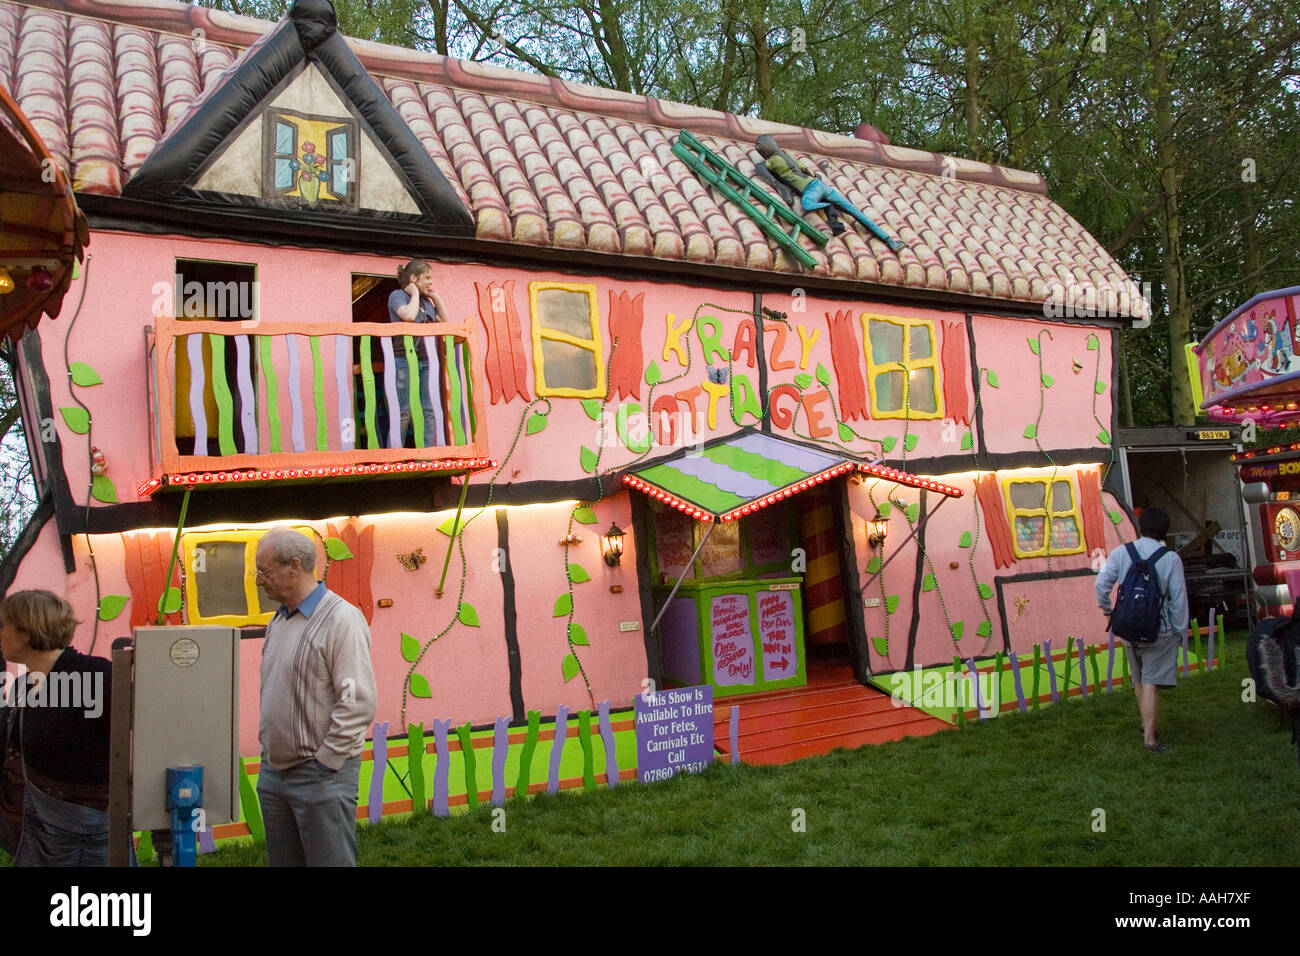 Le crazy chalet au fête foraine à Bardwell dans le Suffolk, une construction gonflable Banque D'Images